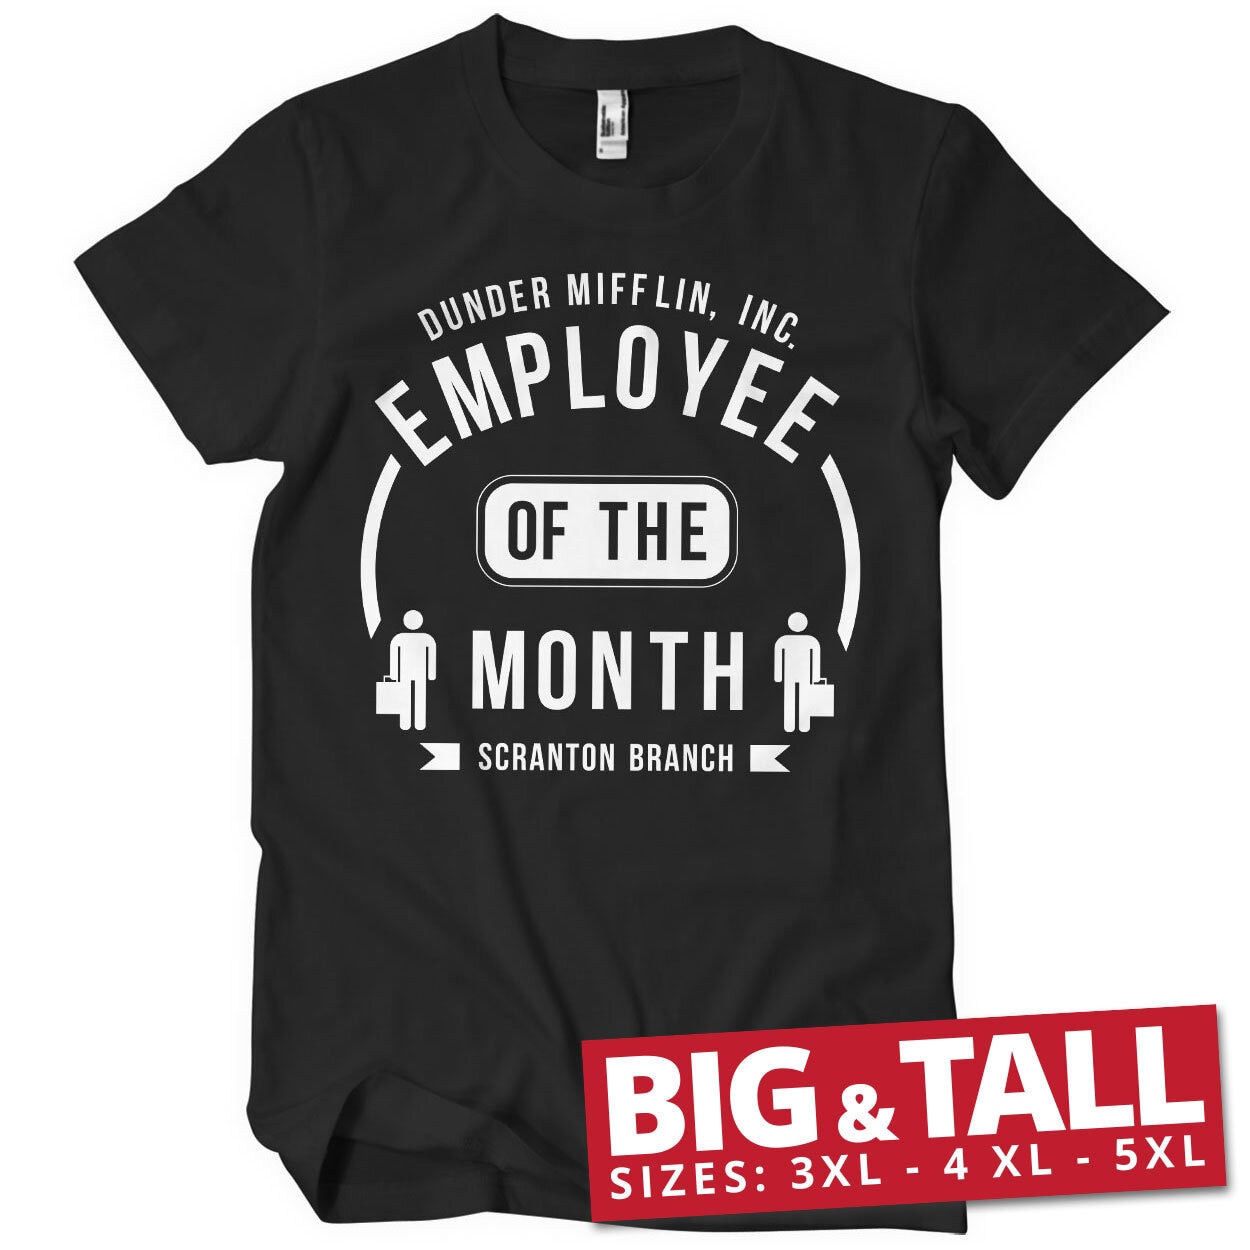 Dunder Mifflin Employee Of The Month Big & Tall T-Shirt